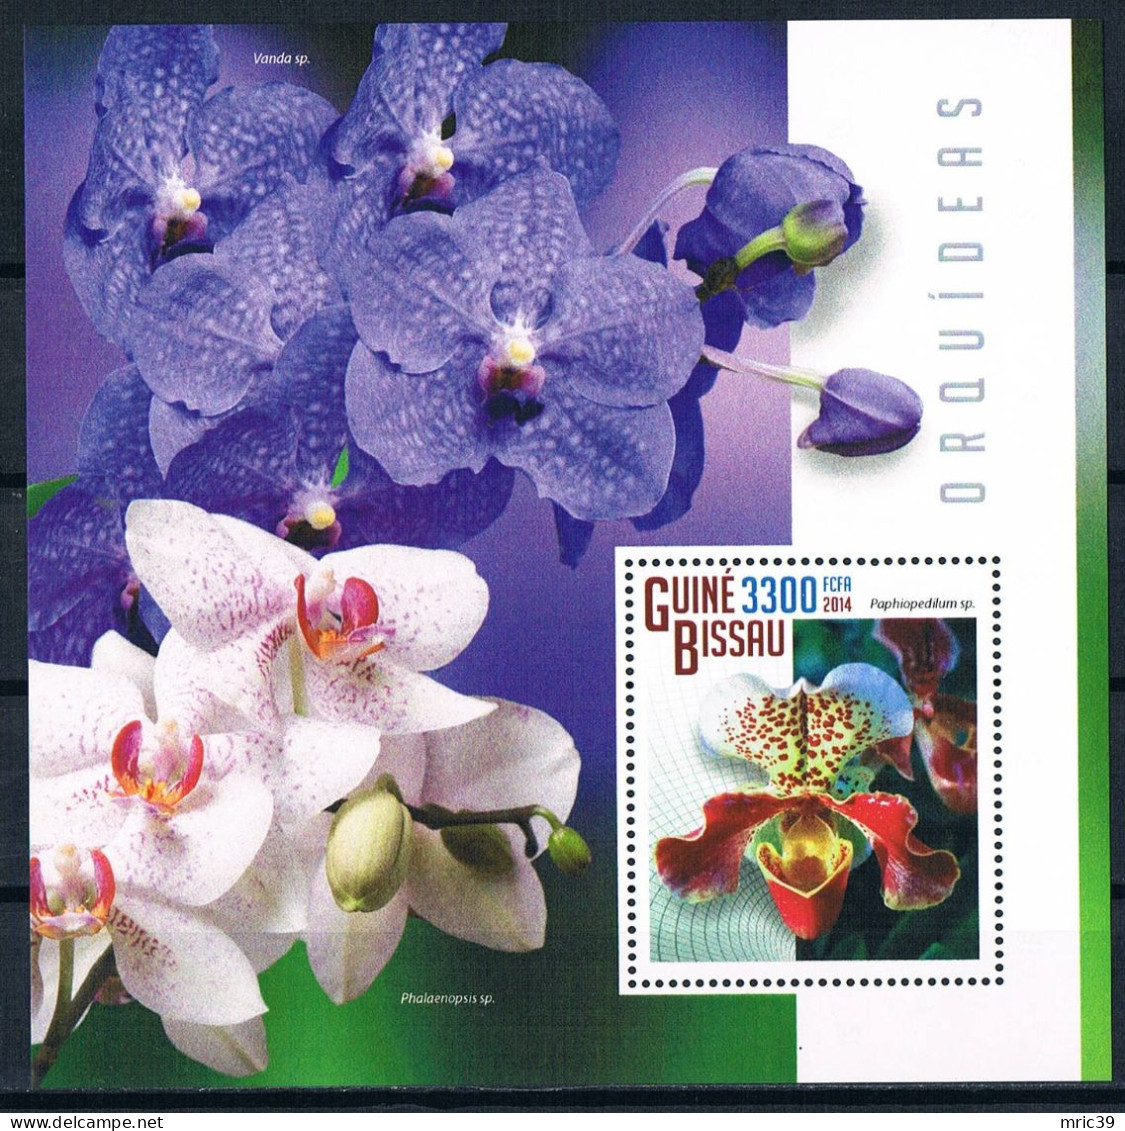 Bloc Sheet Fleurs Orchidées Flowers Orchids  Neuf  MNH **  Guine Bissau 2014 - Orchidées